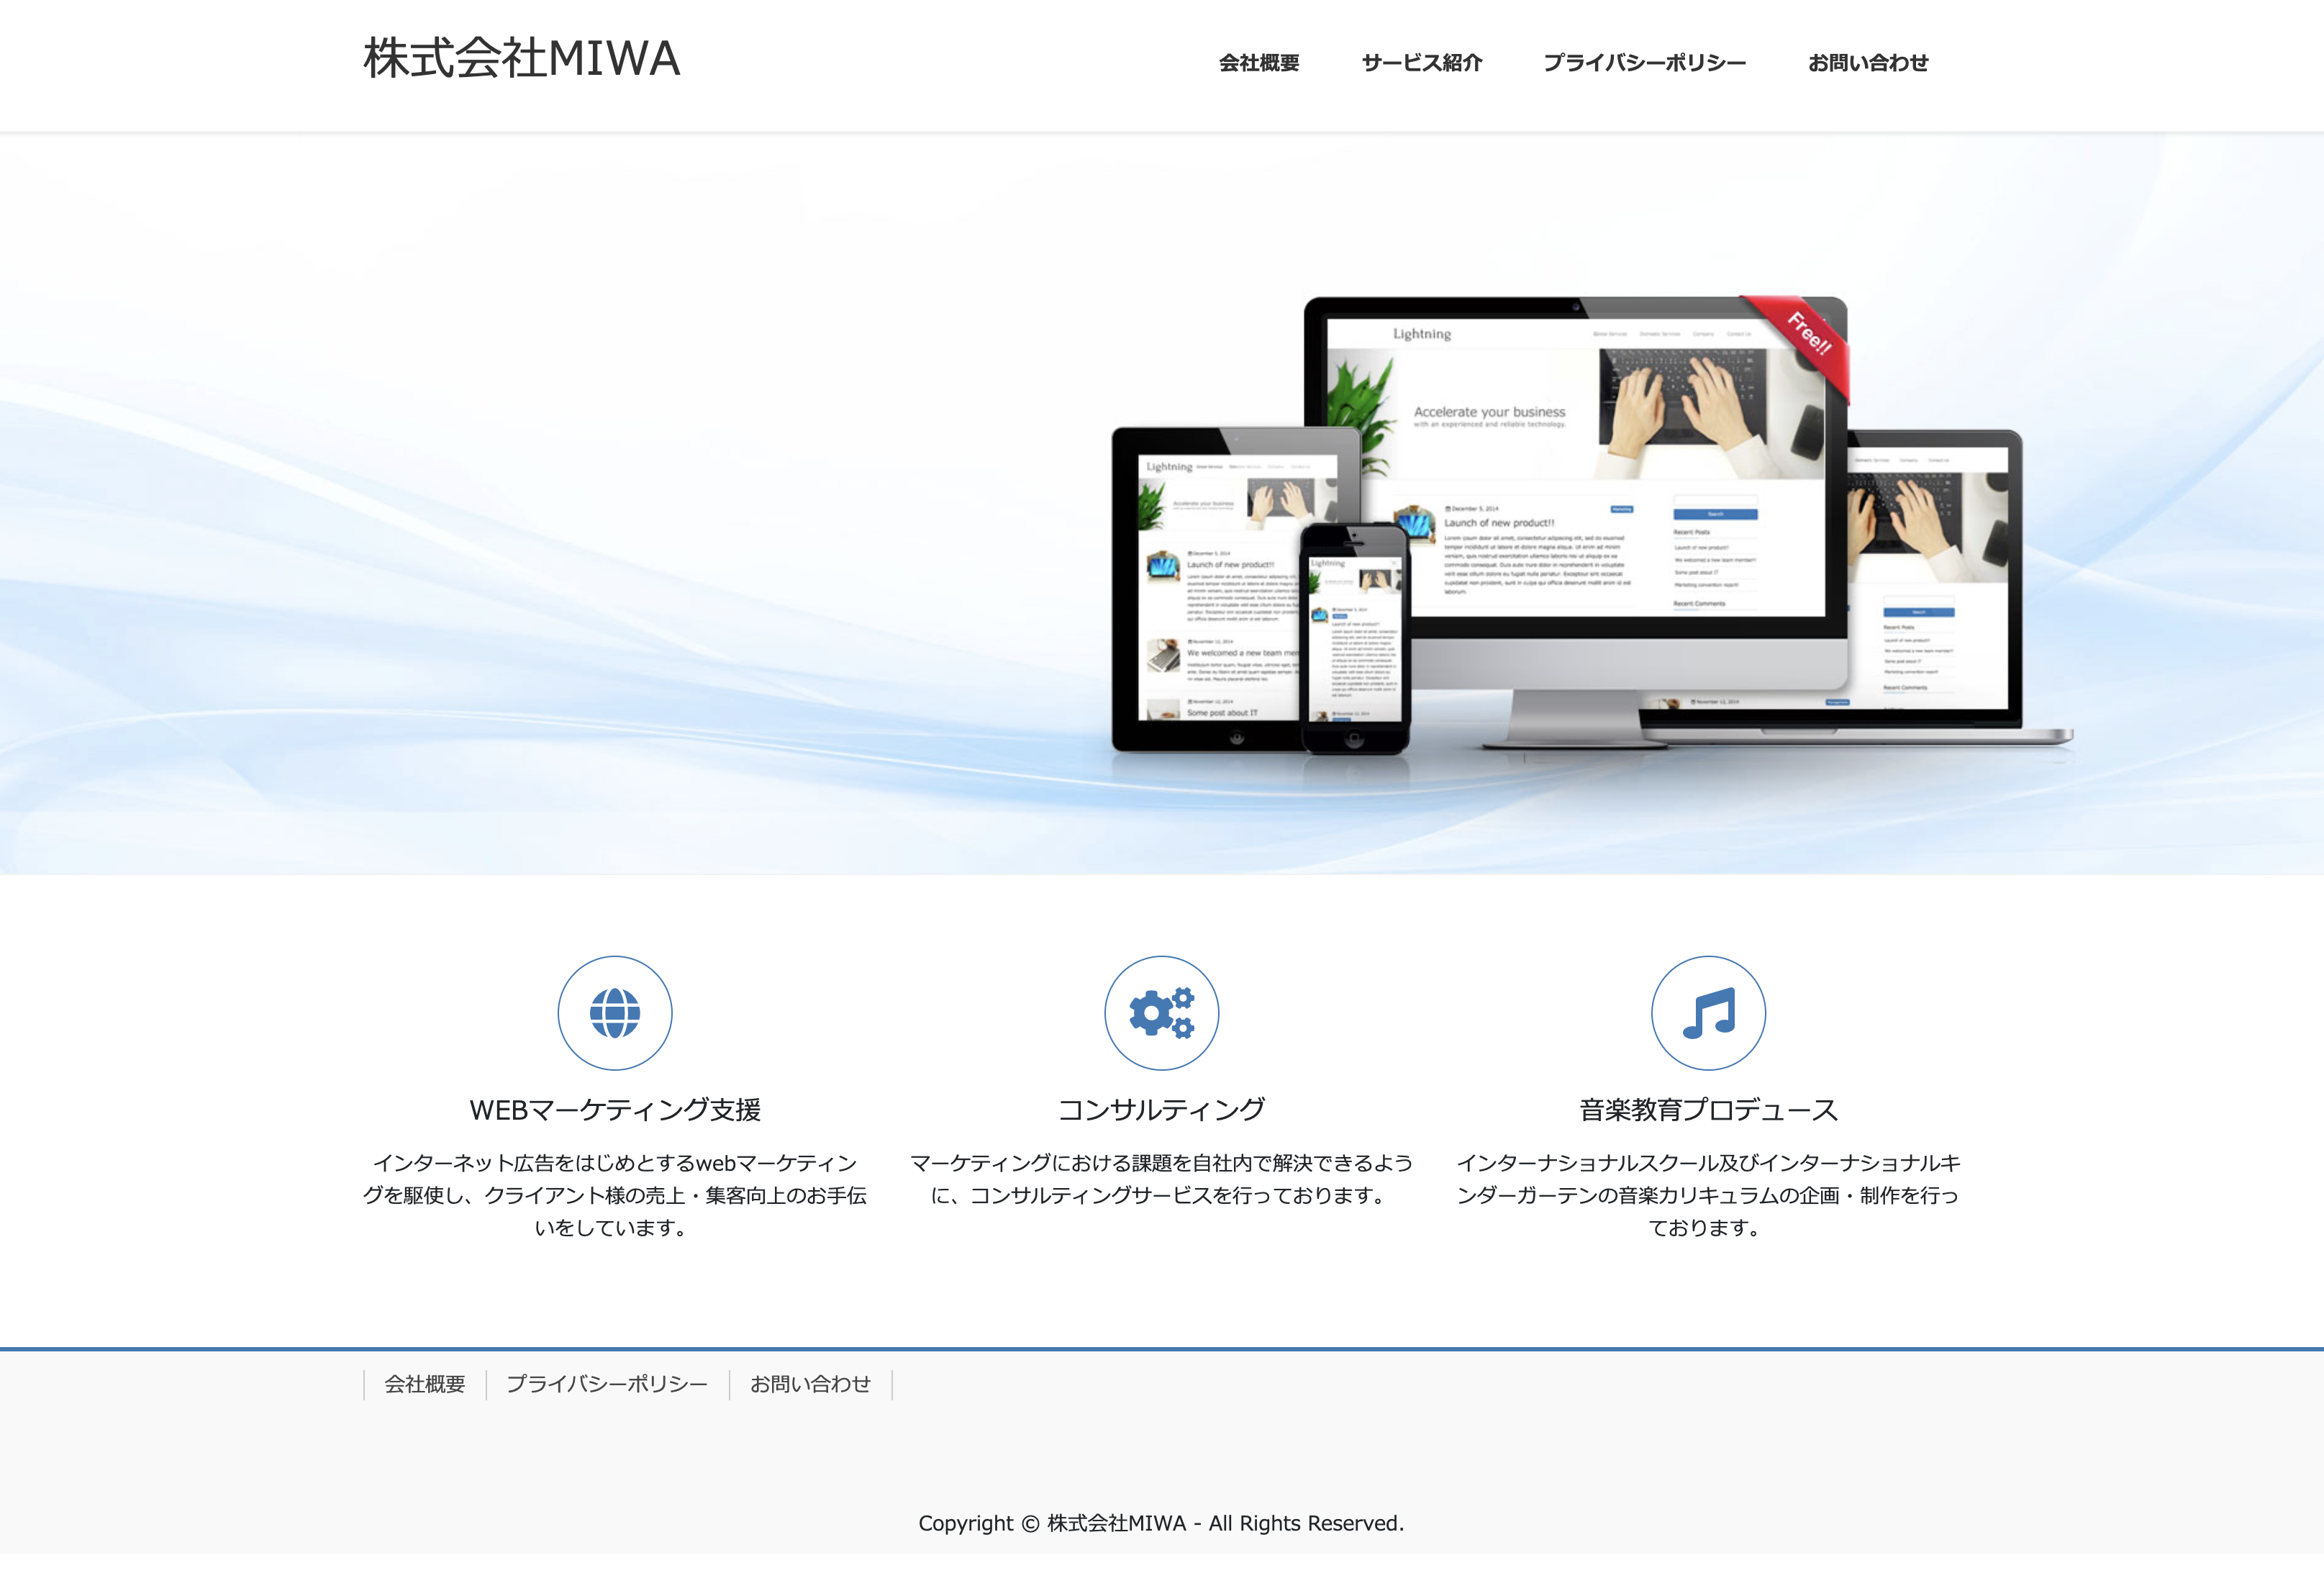 株式会社MIWAの株式会社MIWA:Web広告サービス